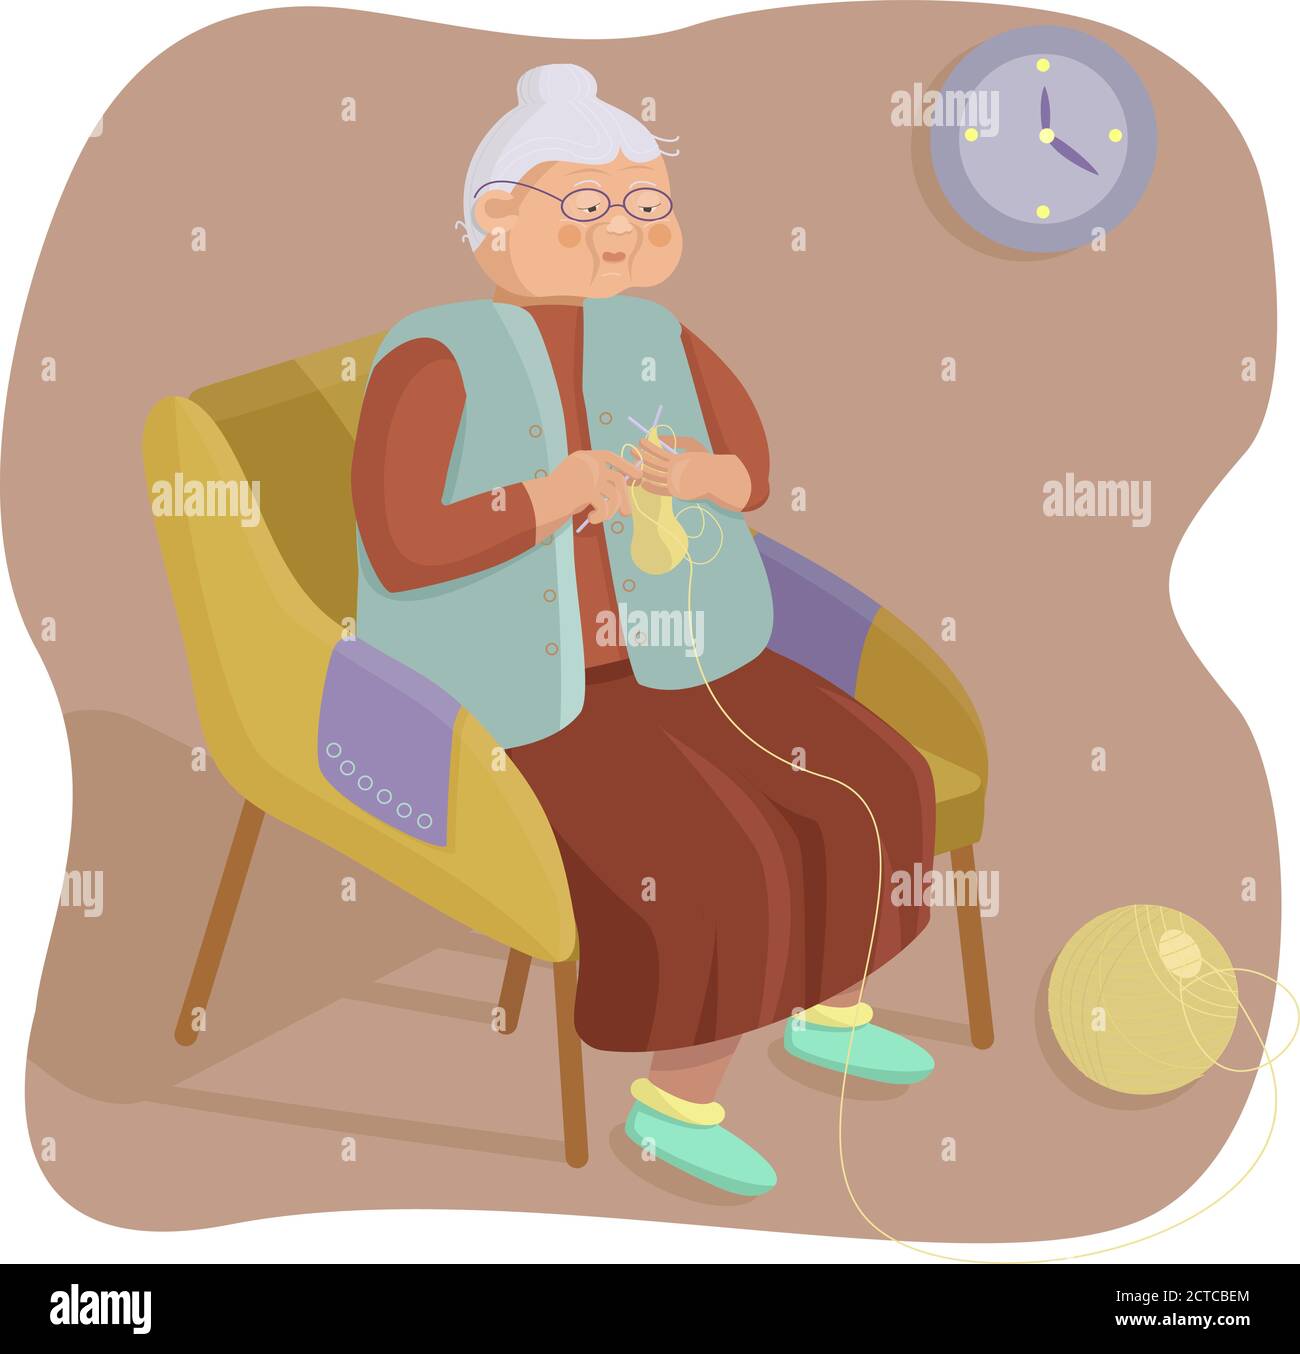 Grand-mère tricots chaussettes. Elle est pensionnée. L'image est plate. Illustration de Vecteur